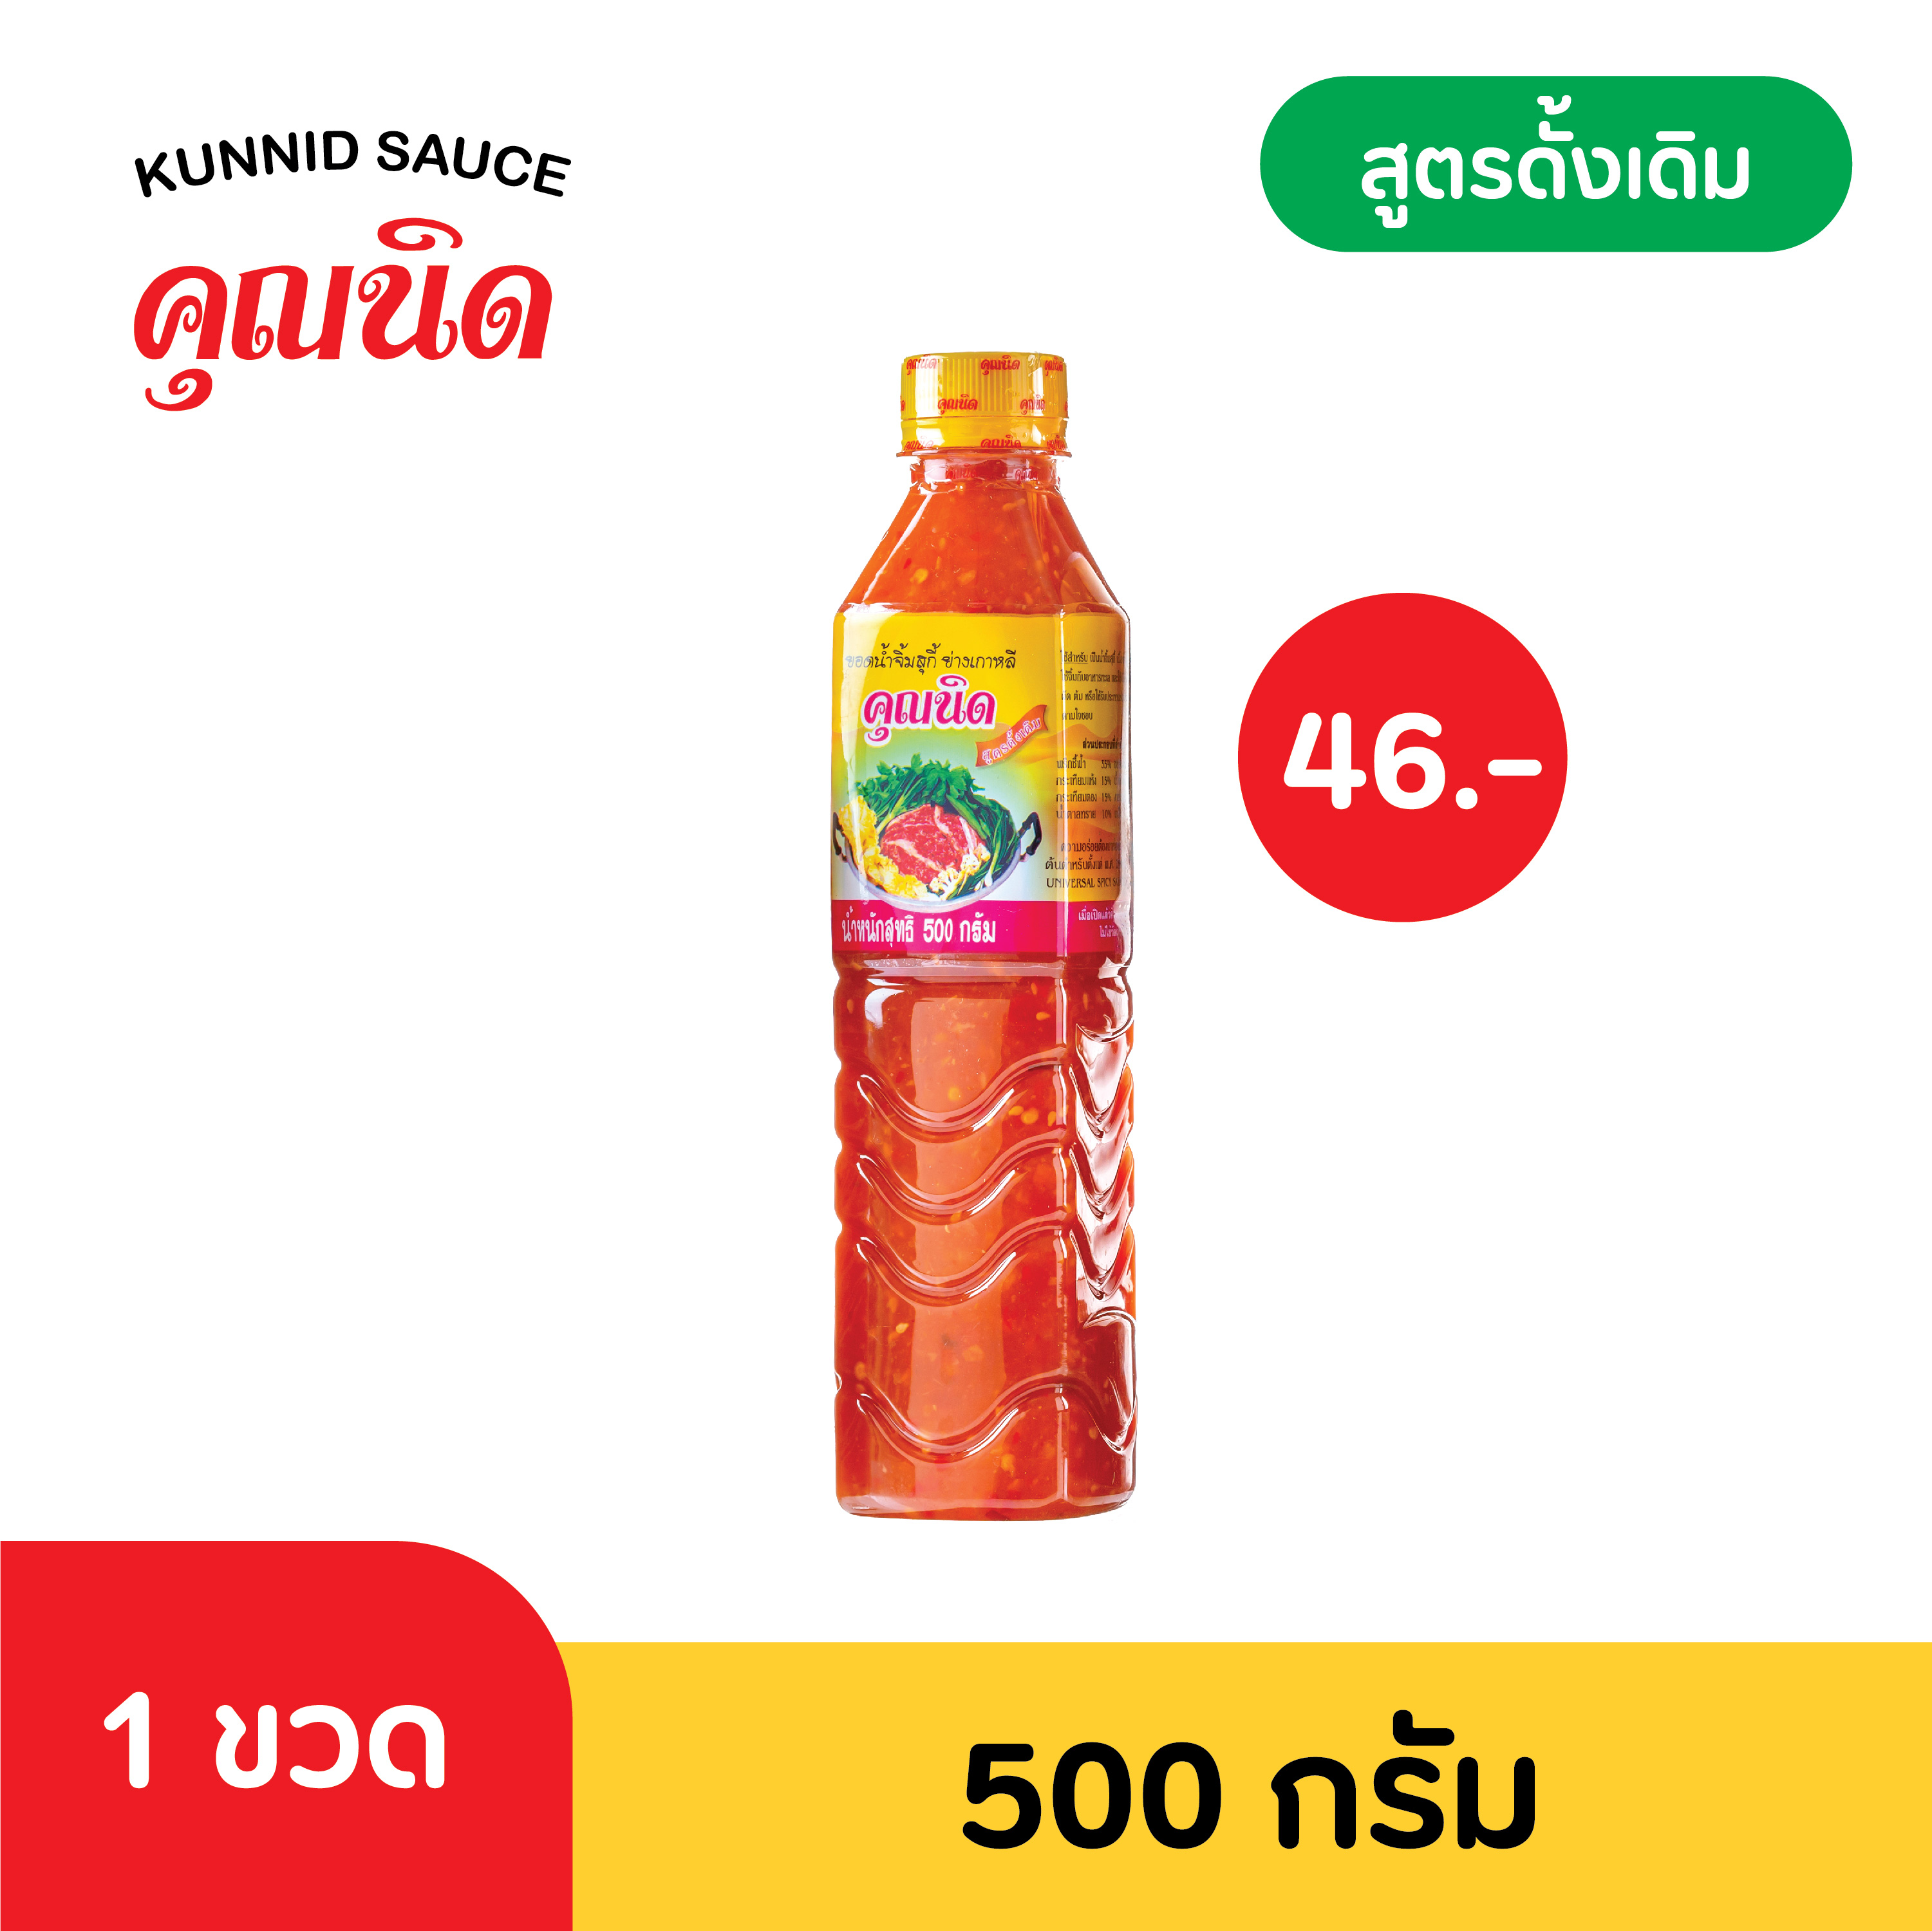 น้ำจิ้มคุณนิด น้ำจิ้มสุกี้-หมูกระทะ ขนาด 500 กรัม (Thai Spicy Hot Pot & Grill Sauce)